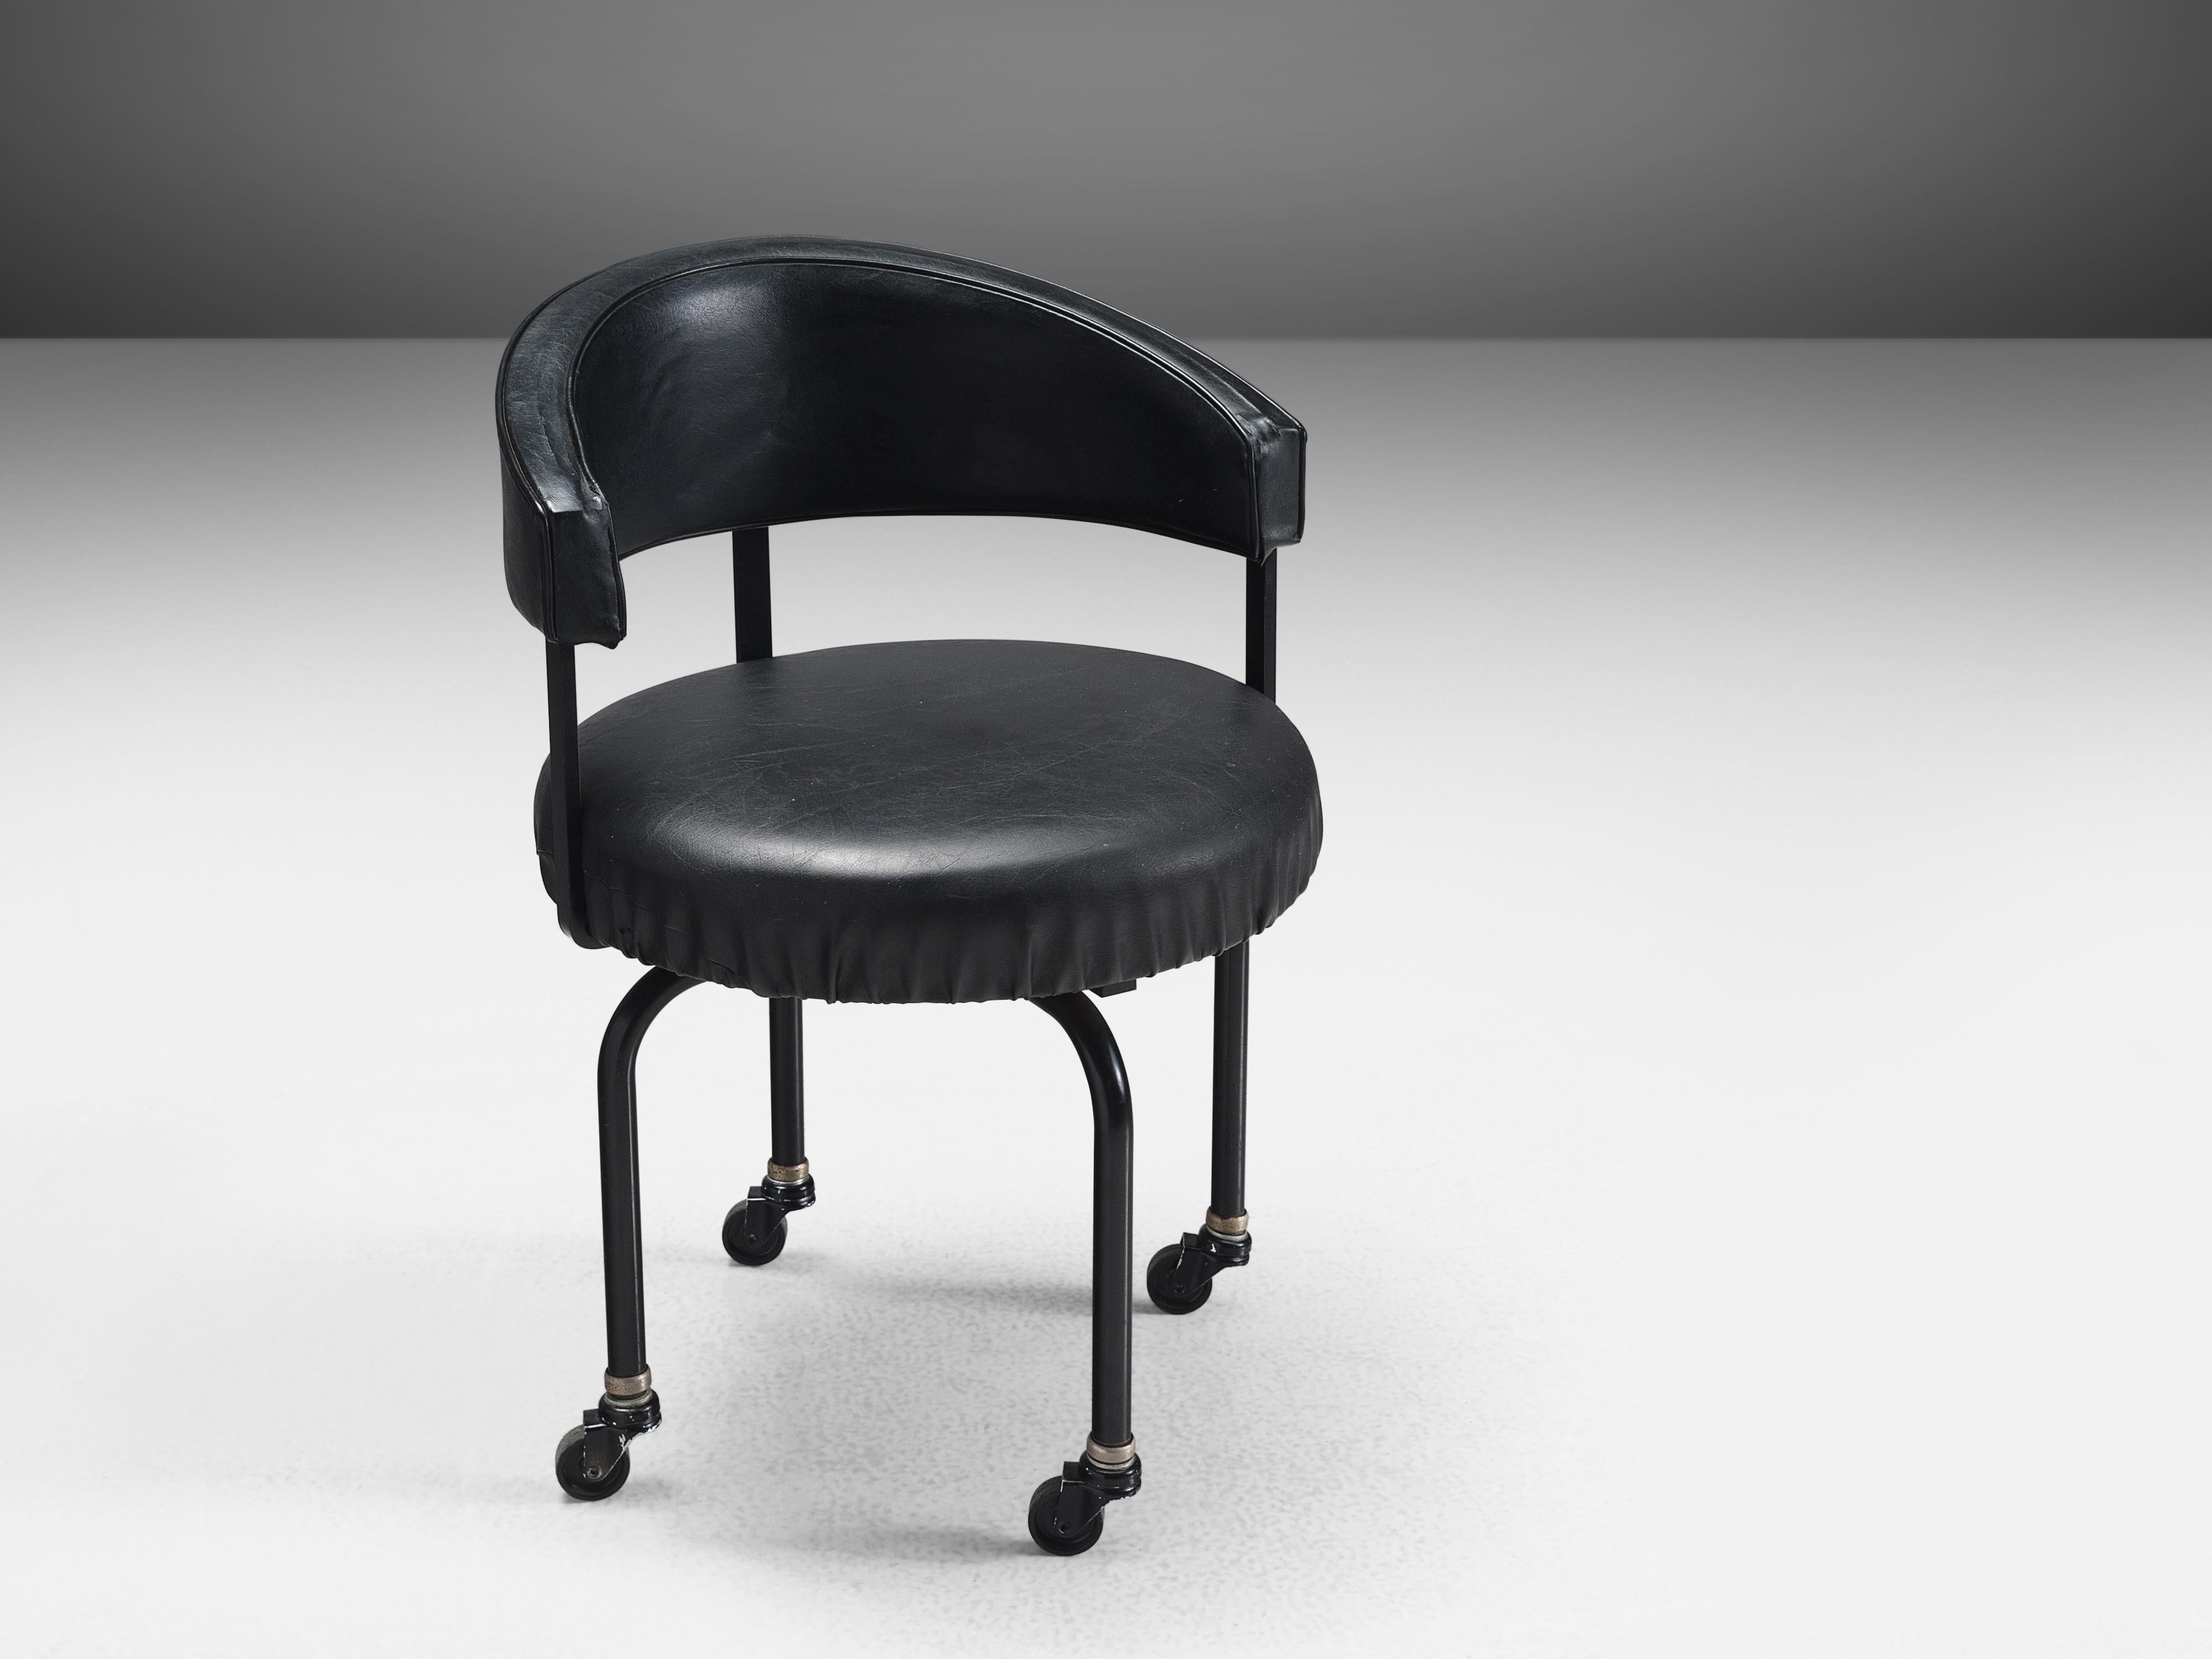 Wim Den Boon, chaise de bureau en faux cuir noir, métal, Pays-Bas, 1960

Cette chaise de bureau unique a été conçue par Wim Den Boon pour un client privé néerlandais de La Haye. Le fauteuil pivotant est unique en son genre car il a été spécialement